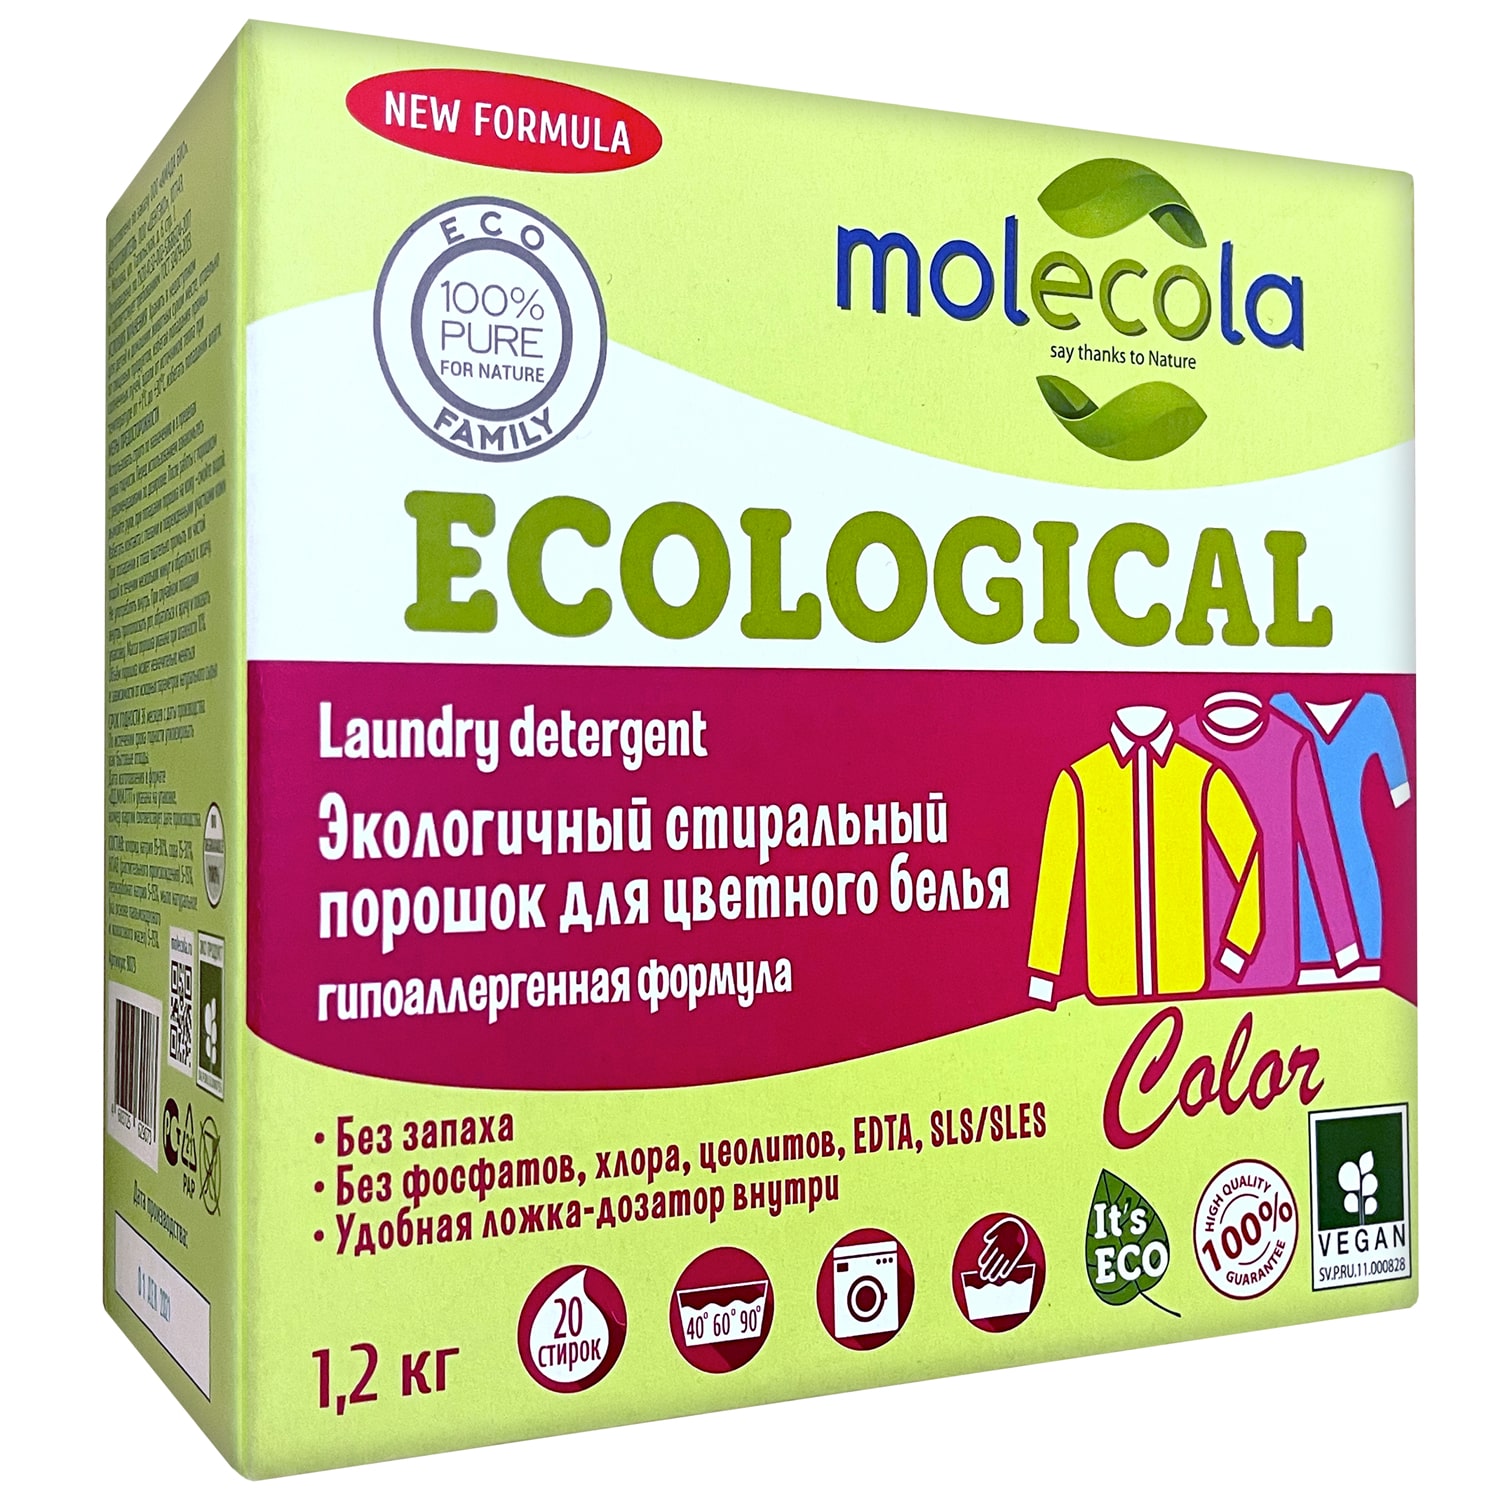 Molecola Стиральный порошок для цветного белья с растительными энзимами, экологичный, 1,2 кг (Molecola, Для стирки)